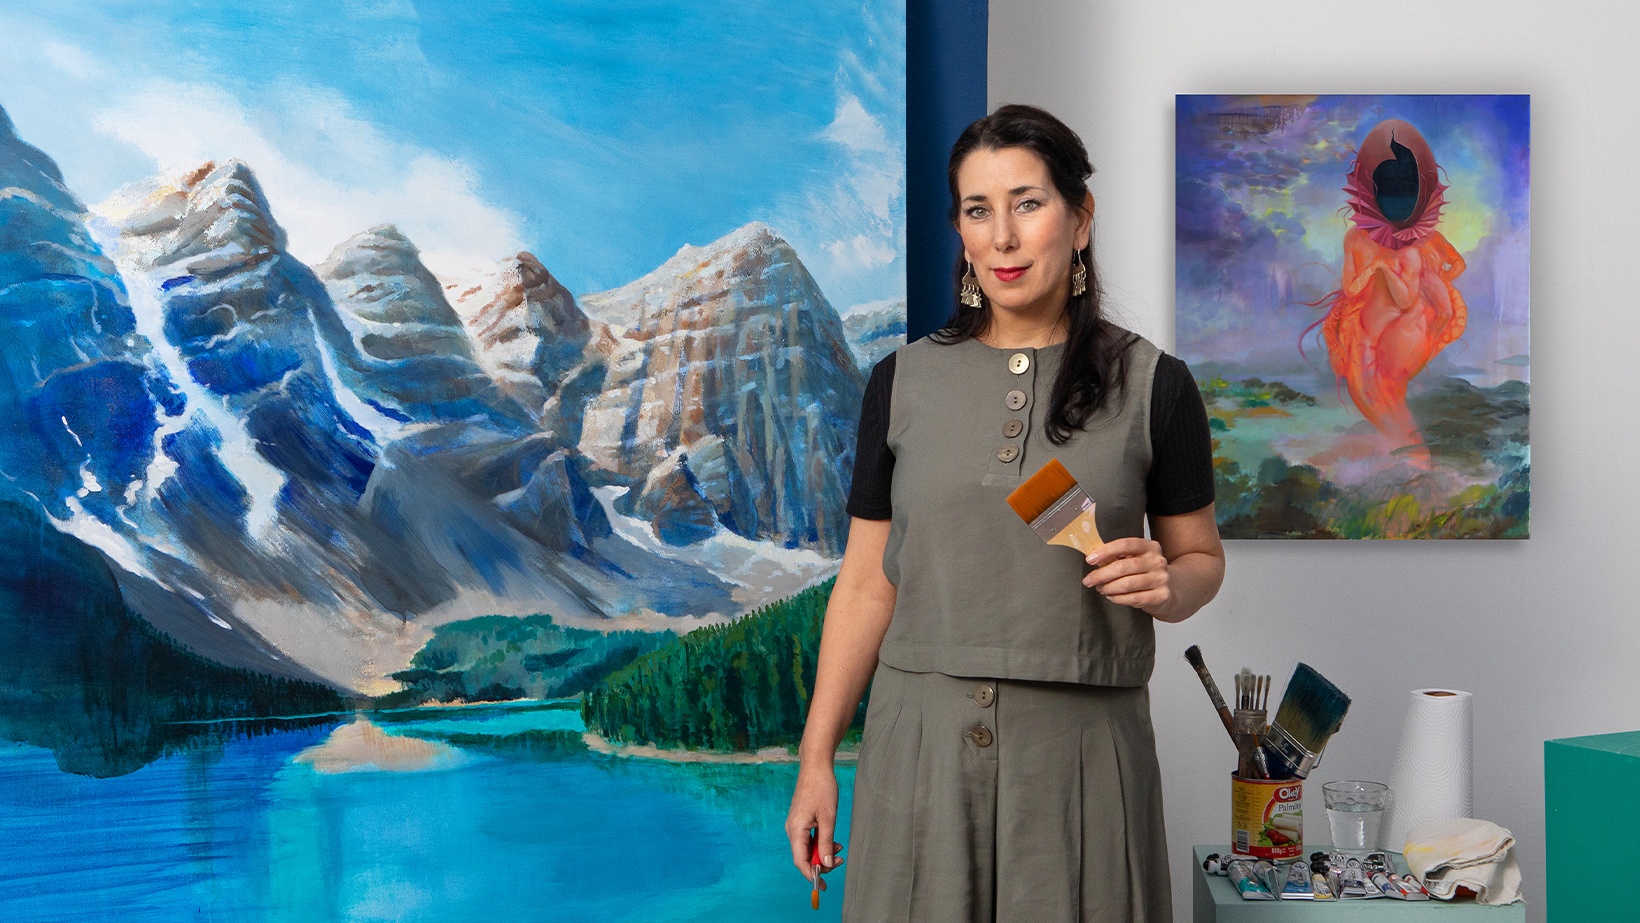 cursus Inleiding tot schilderen van landschappen met acrylverf (Florencia Fraschina) Domestika